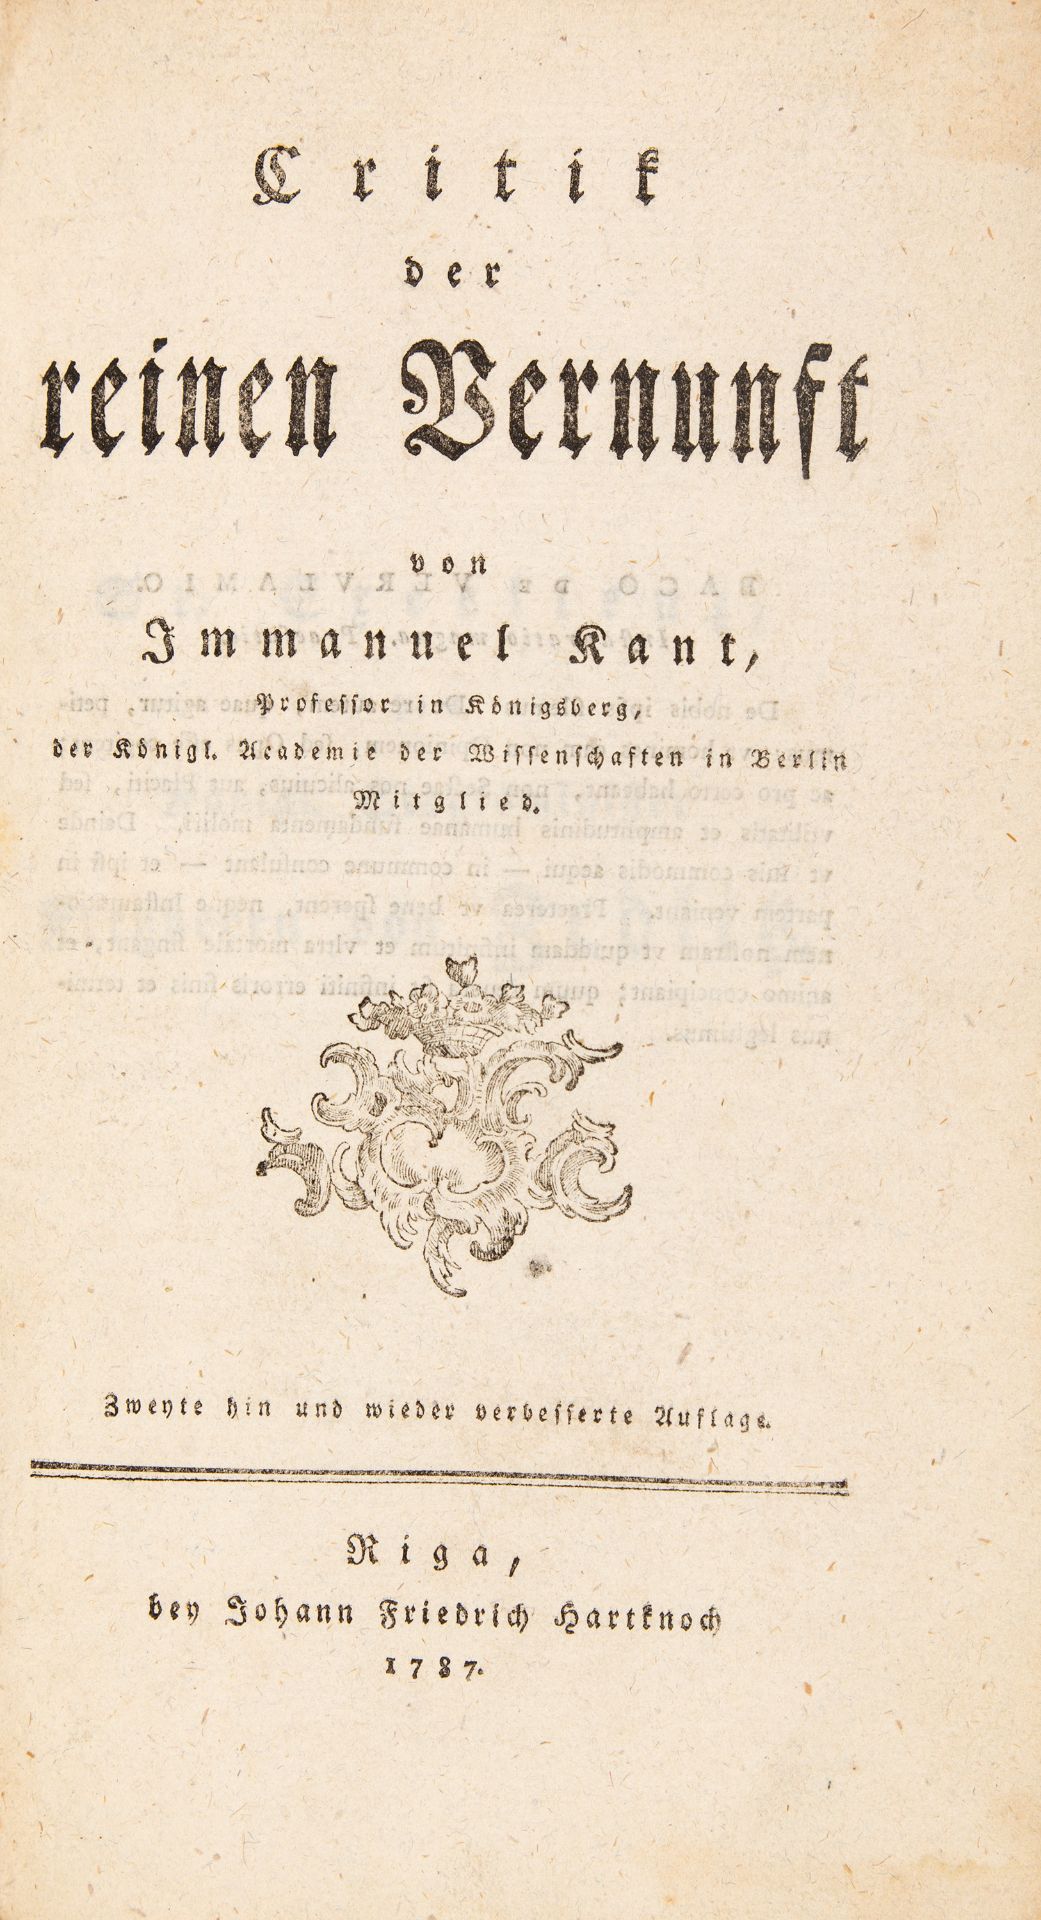 I. Kant, Critik der reinen Vernunft. 2. verb. Aufl. Riga 1787.